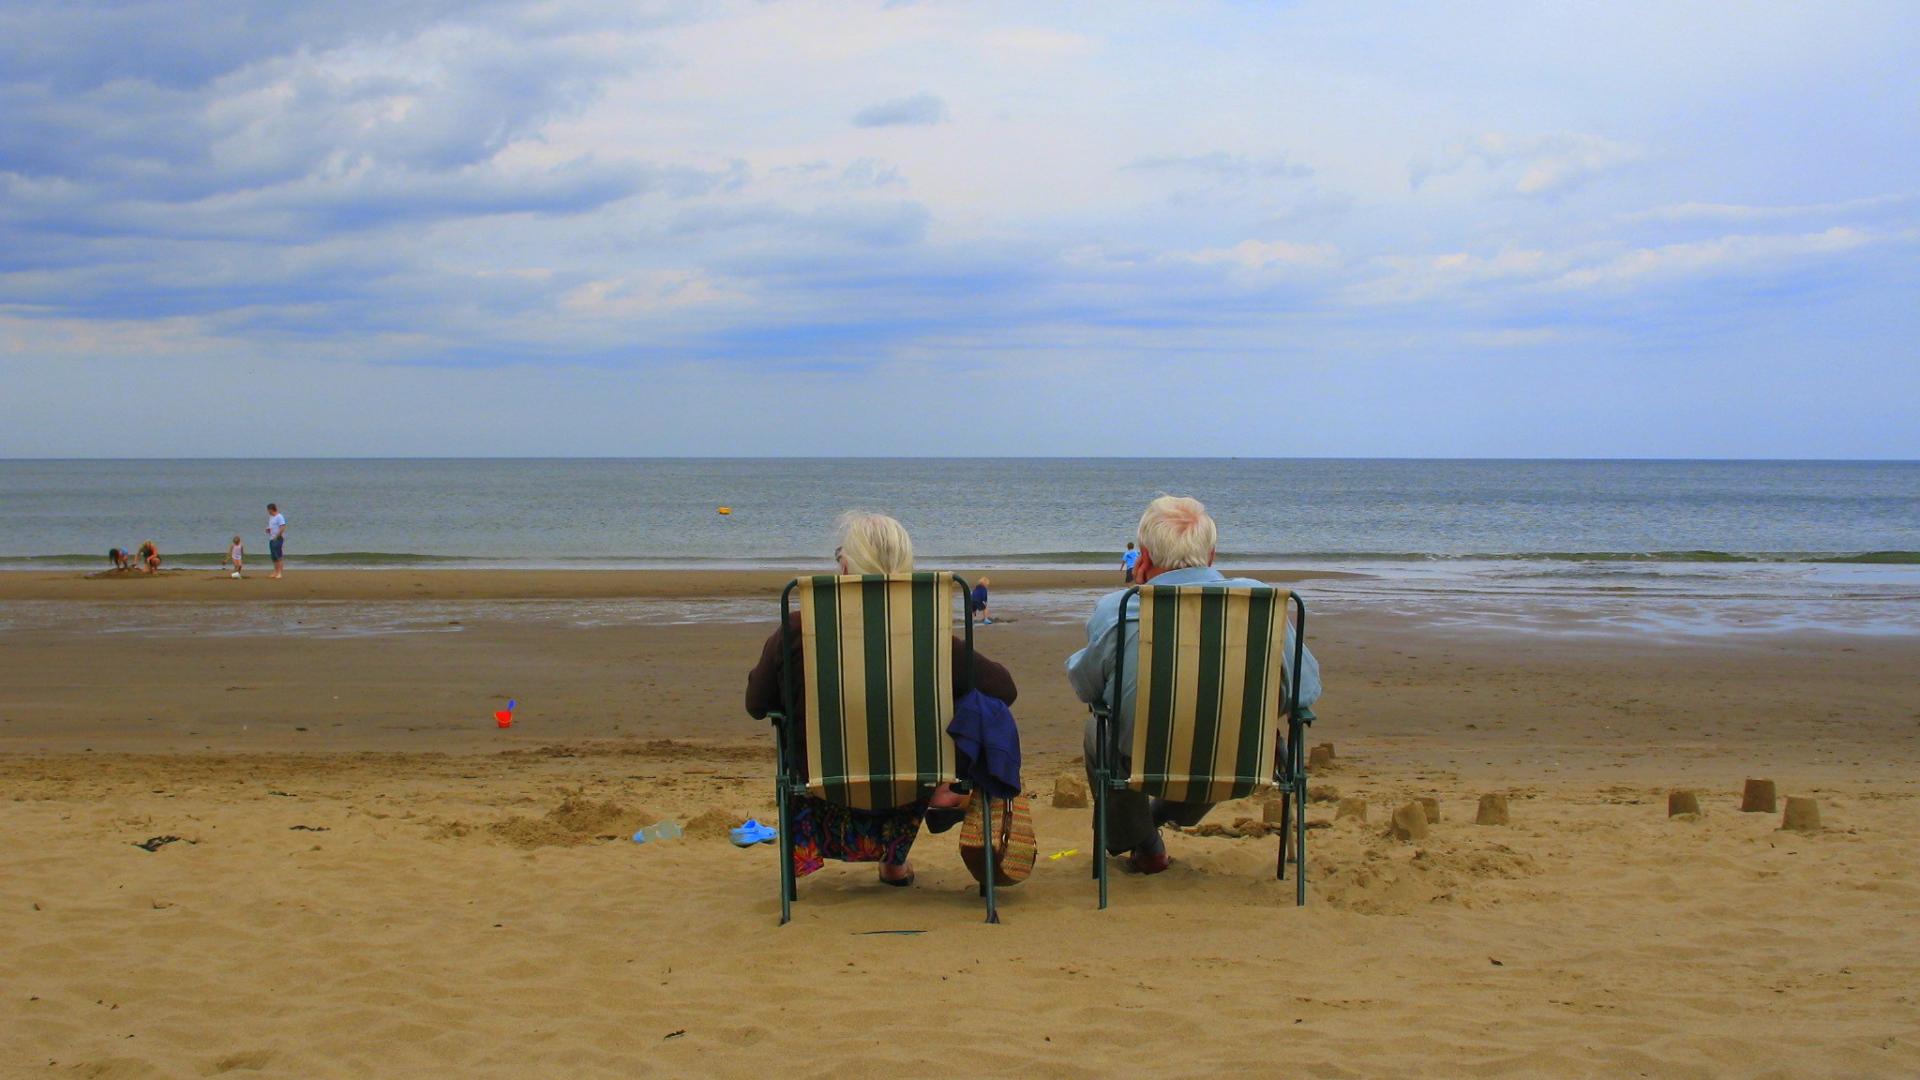 Elderly couple on a beach